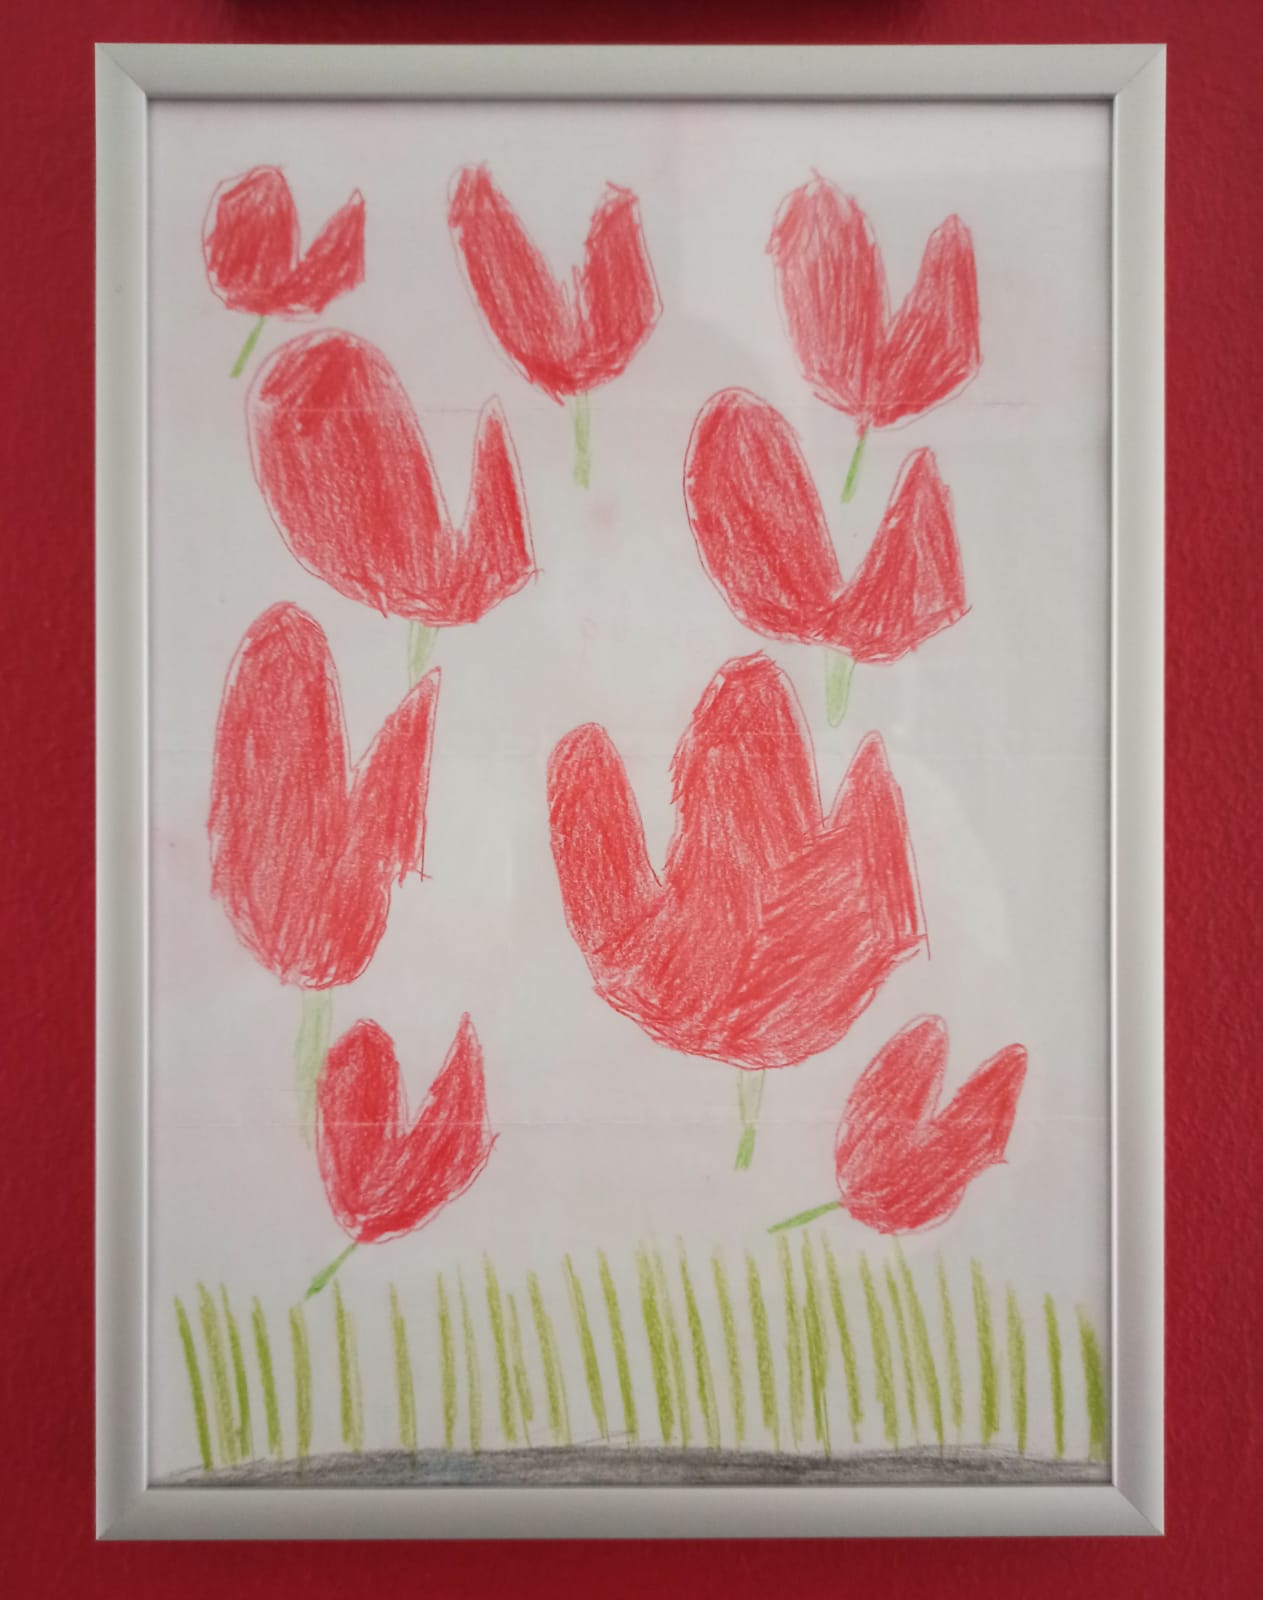 Ein Bilderrahmen auf roter Wand. Das Bild zeigt Wiese und rote Tulpen und Herzen.